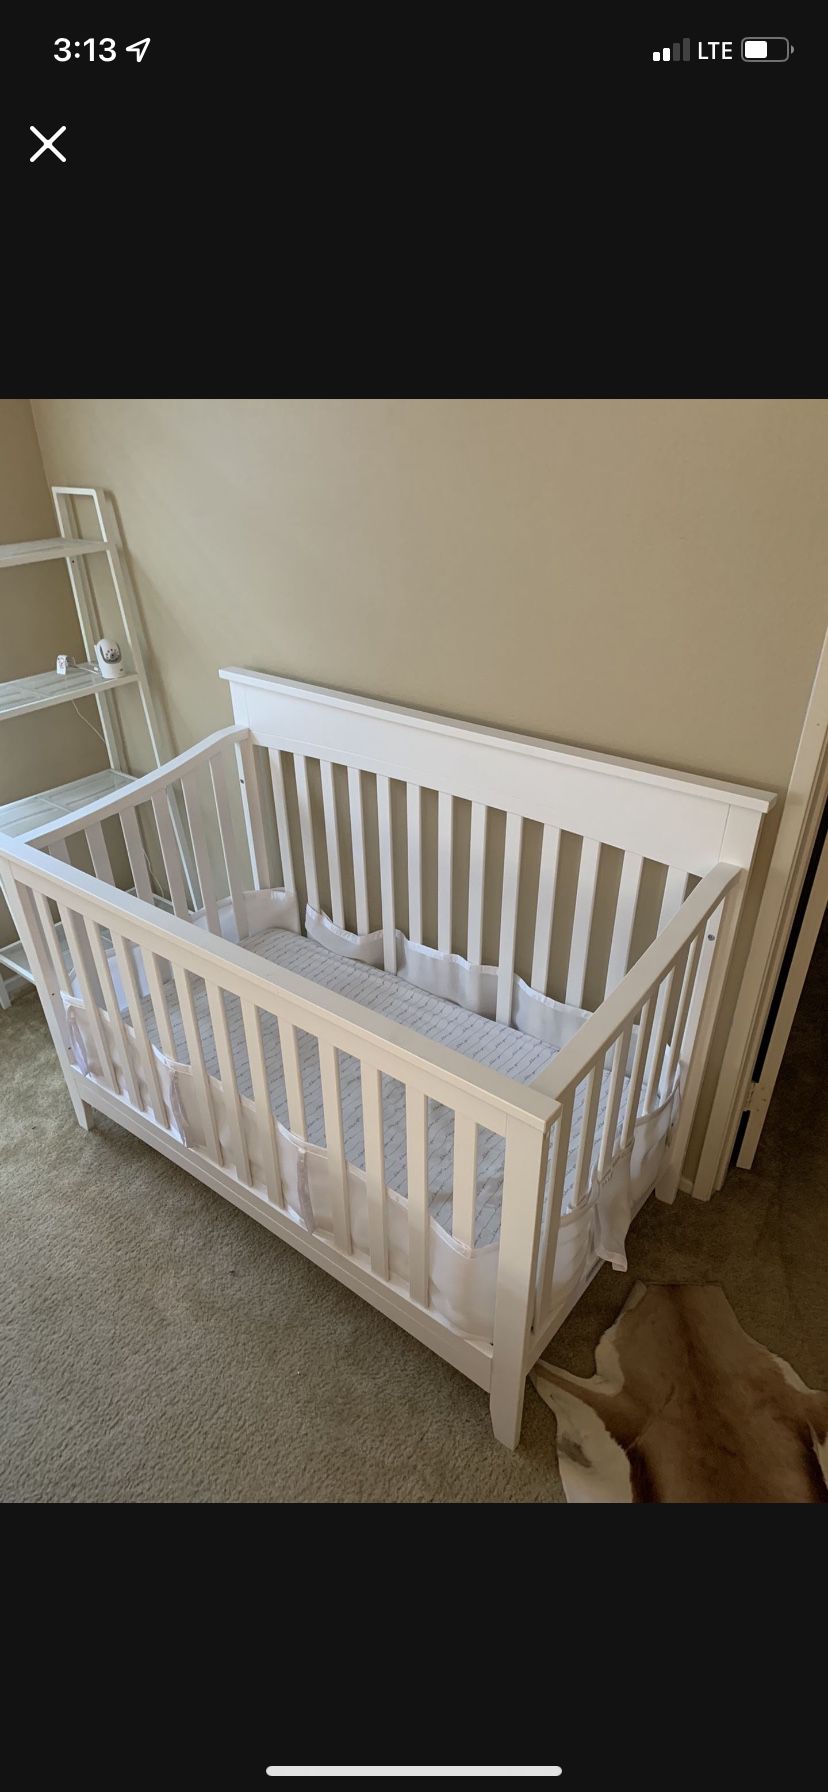 Million dollar Baby Crib